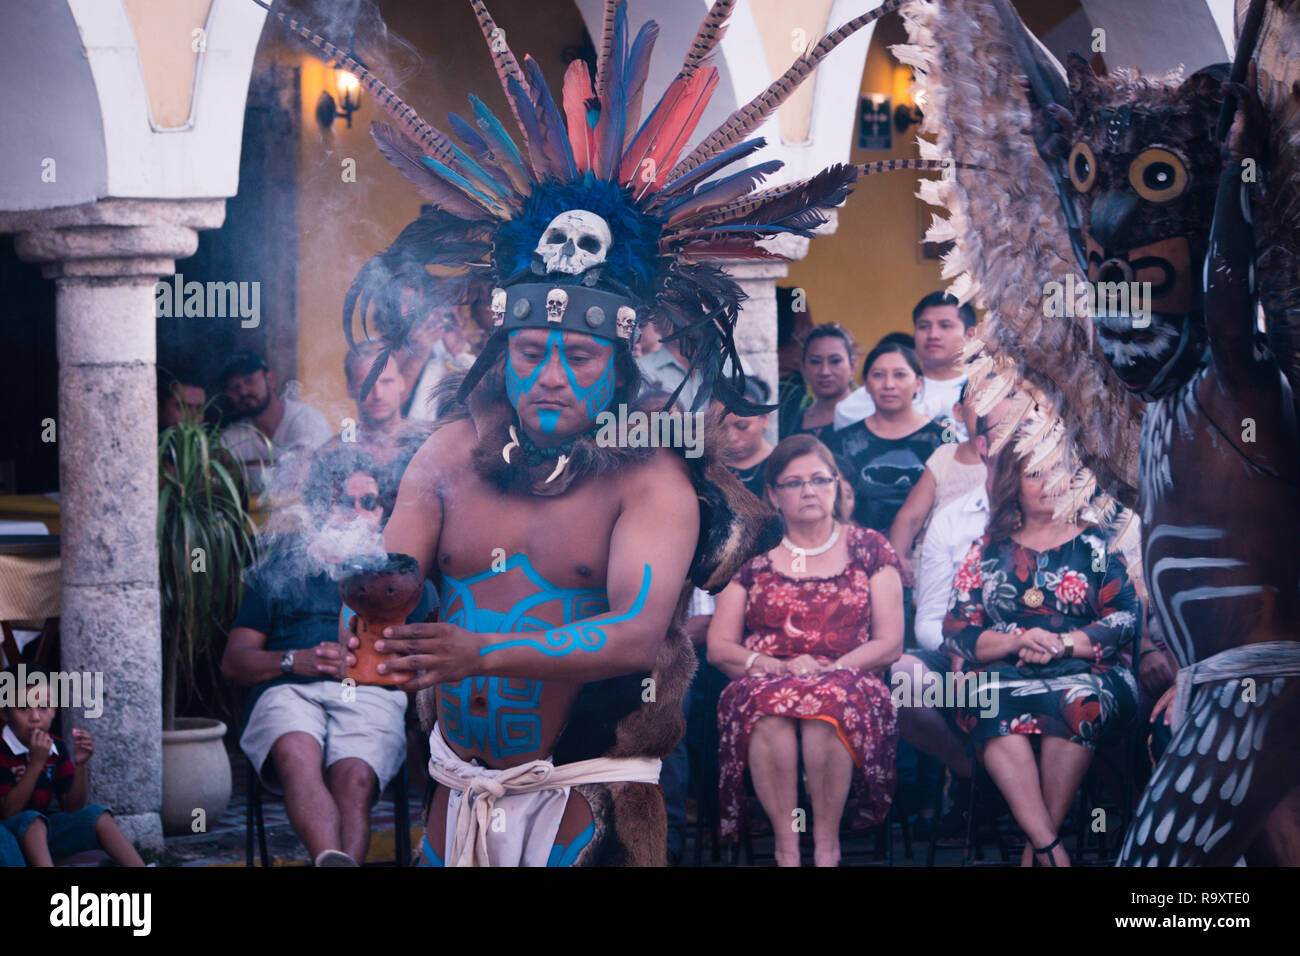 Des spectacles traditionnels mayas Mexique Valladolid Banque D'Images